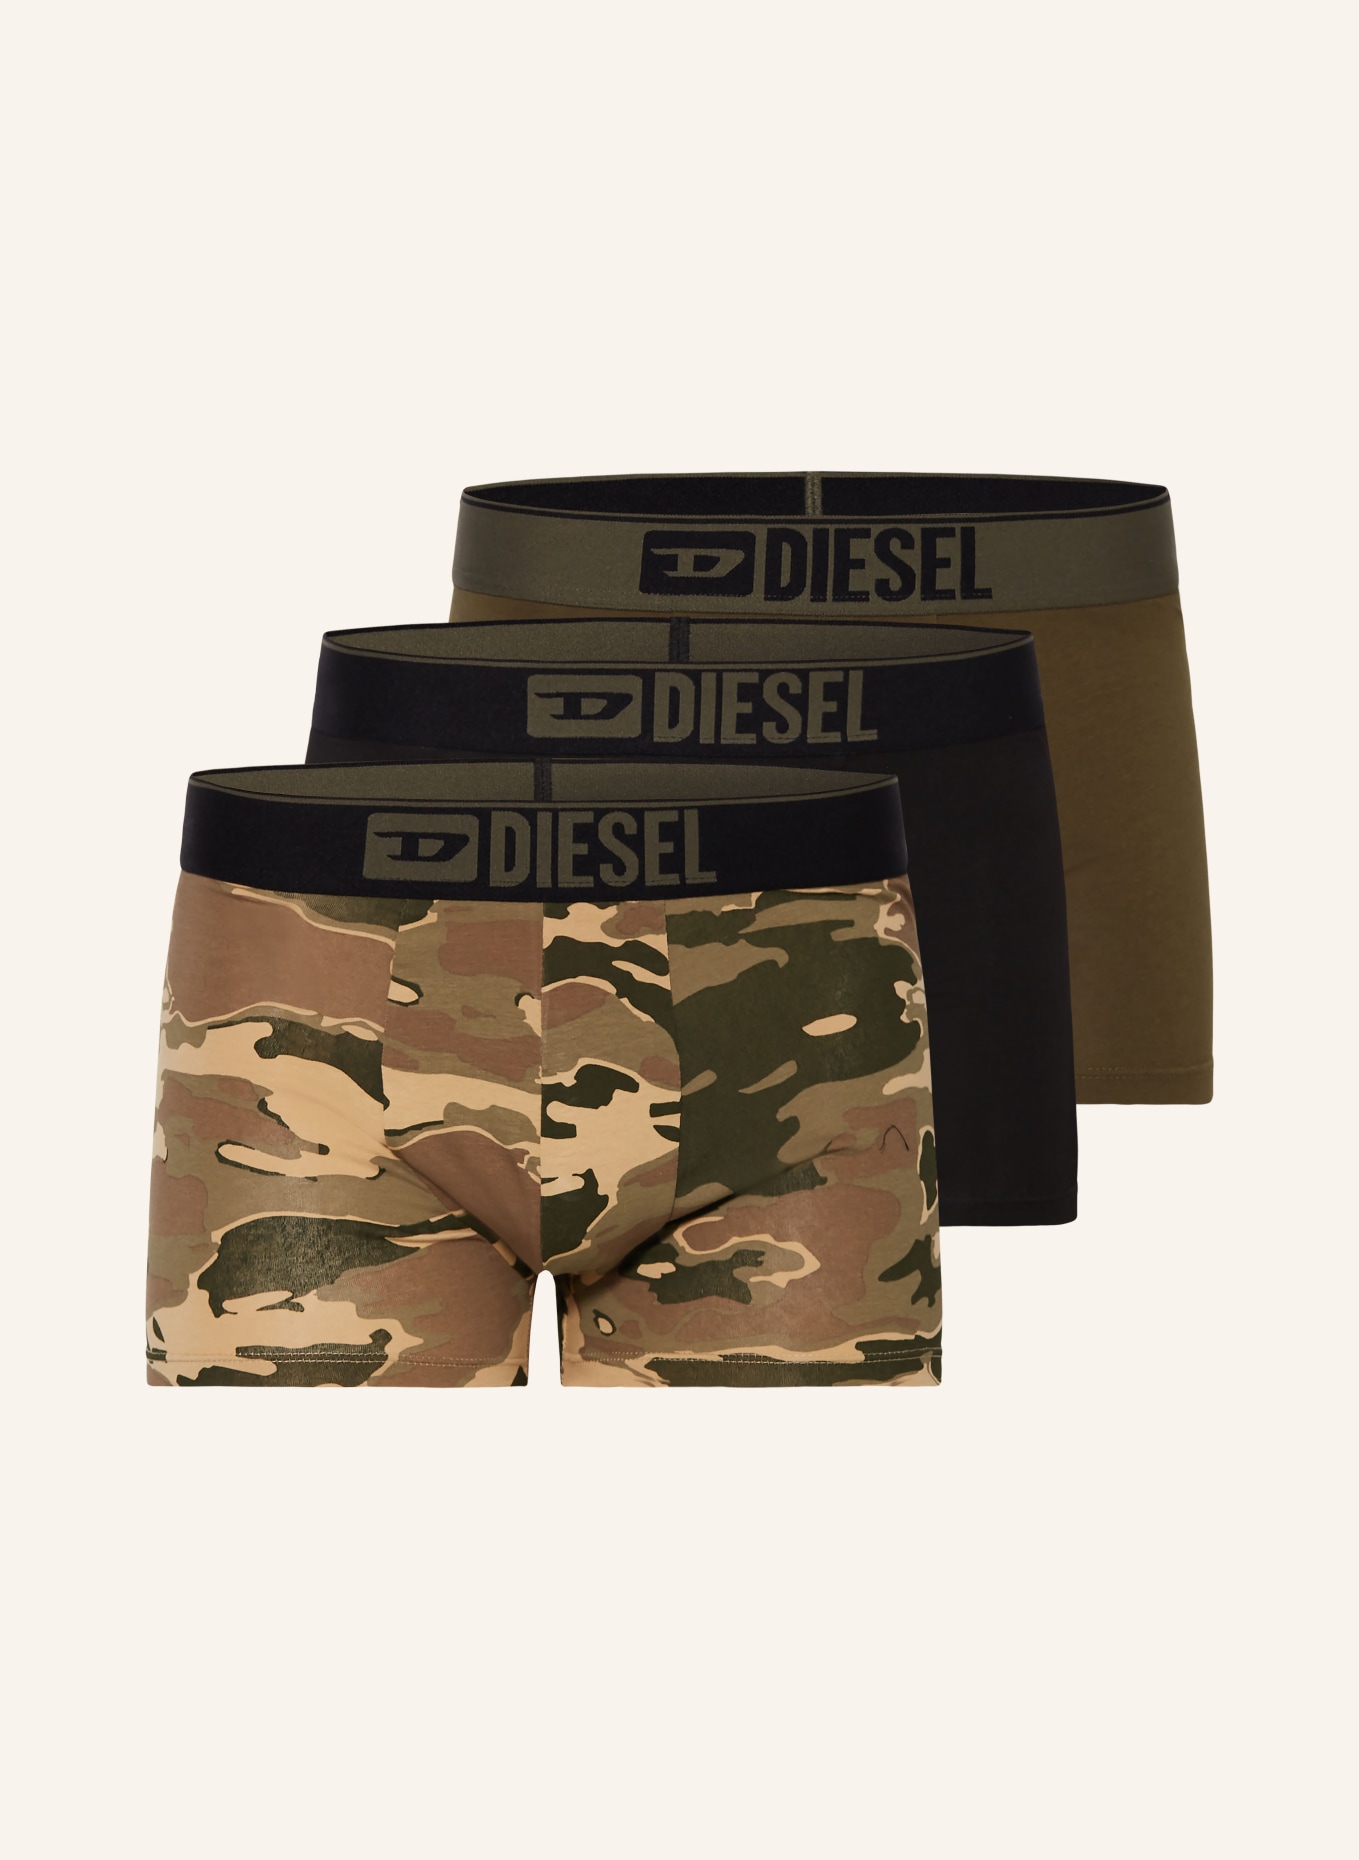 DIESEL 3-pack boxer shorts DAMIEN, Color: KHAKI/ OLIVE/ BEIGE (Image 1)